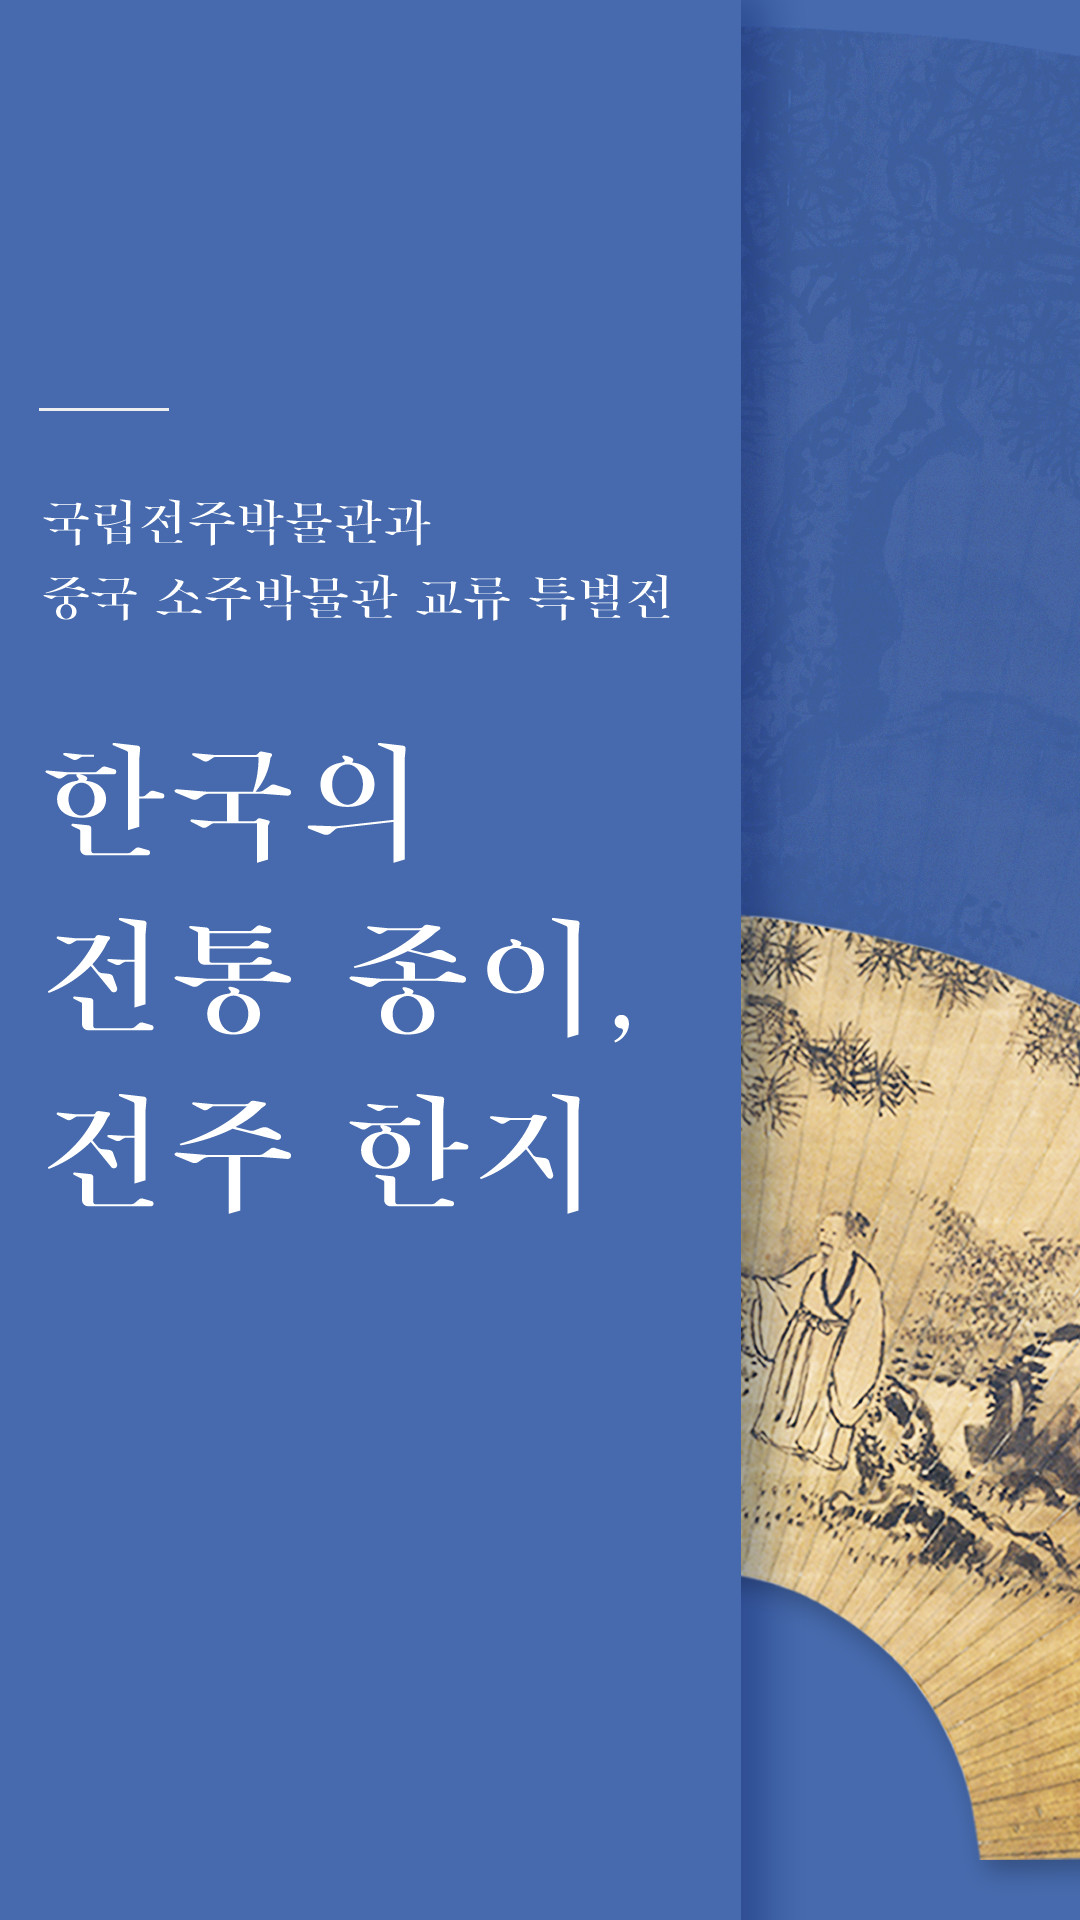 국립전주박물관과 중국 소주박물관 교류 특별전 - 한국의 전통 종이, 전주 한지